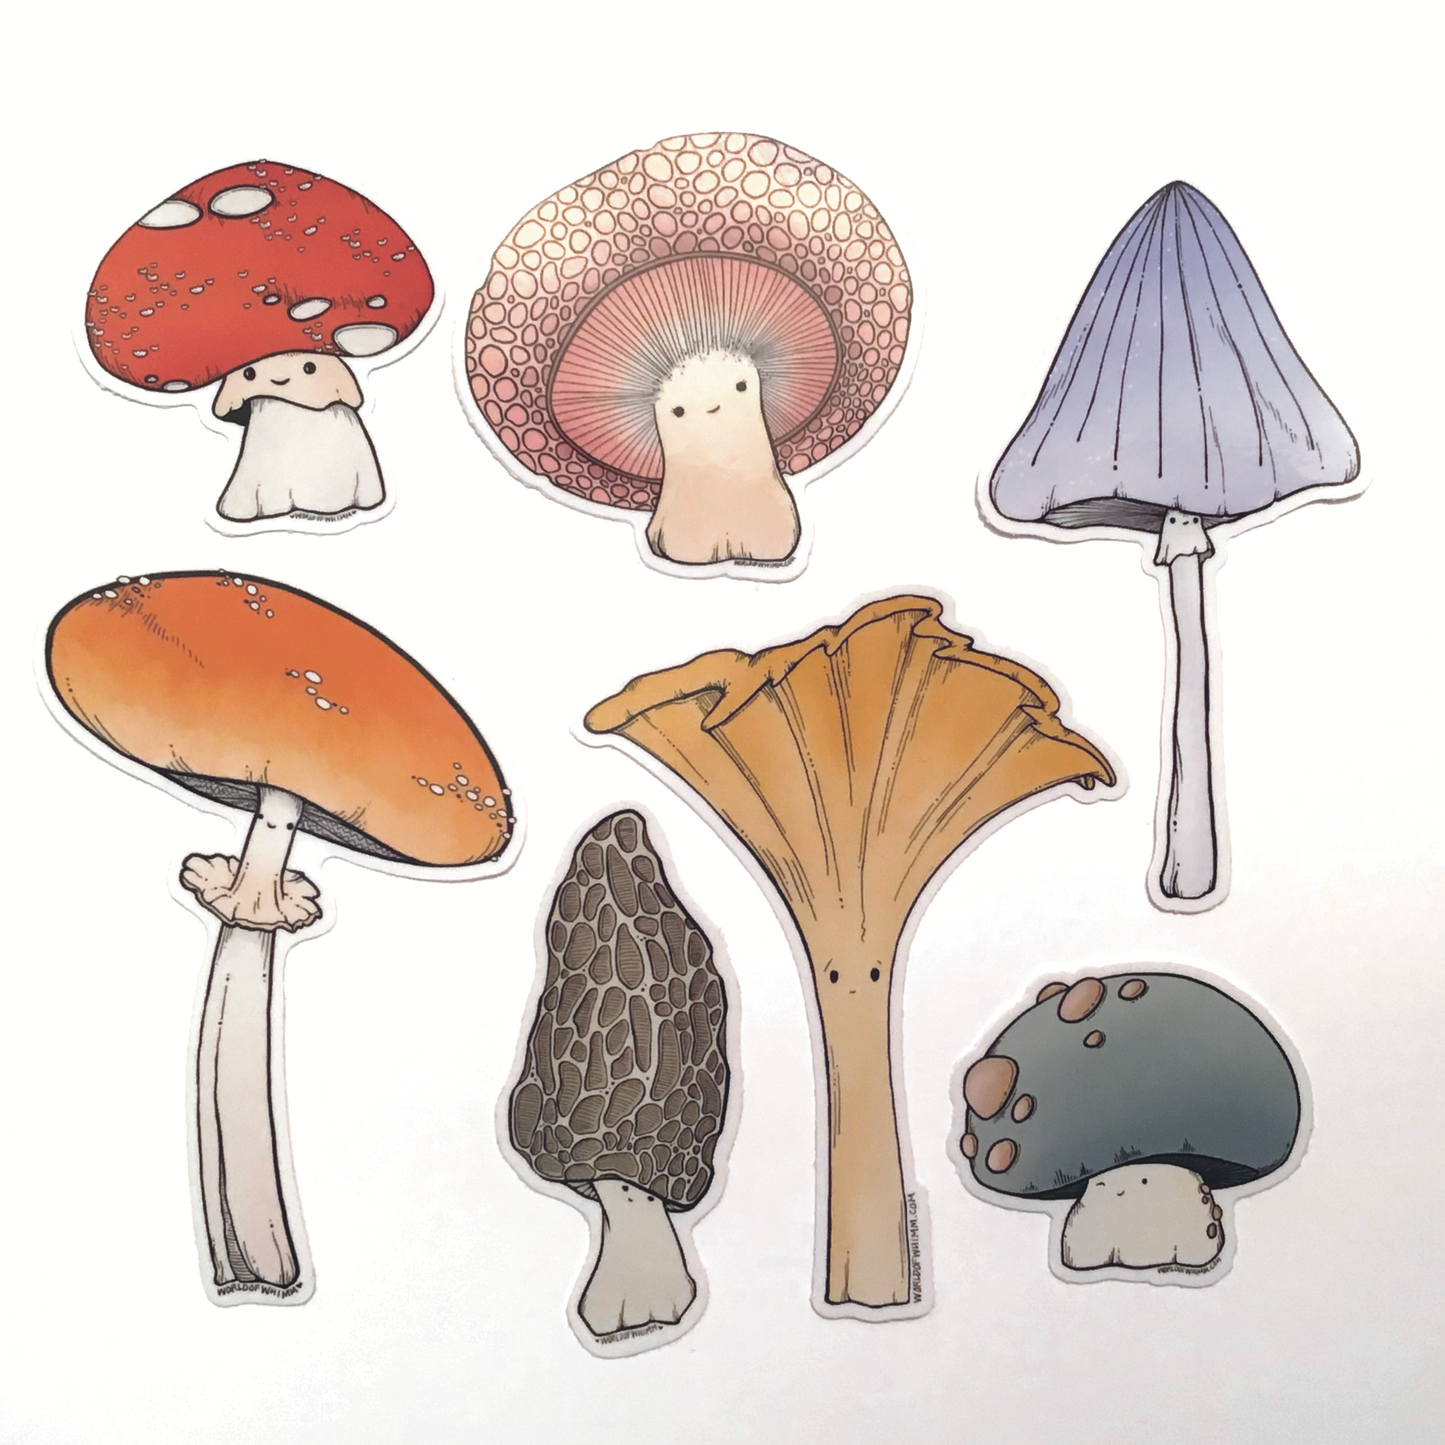 Vinyl Sticker - Pink mushroom